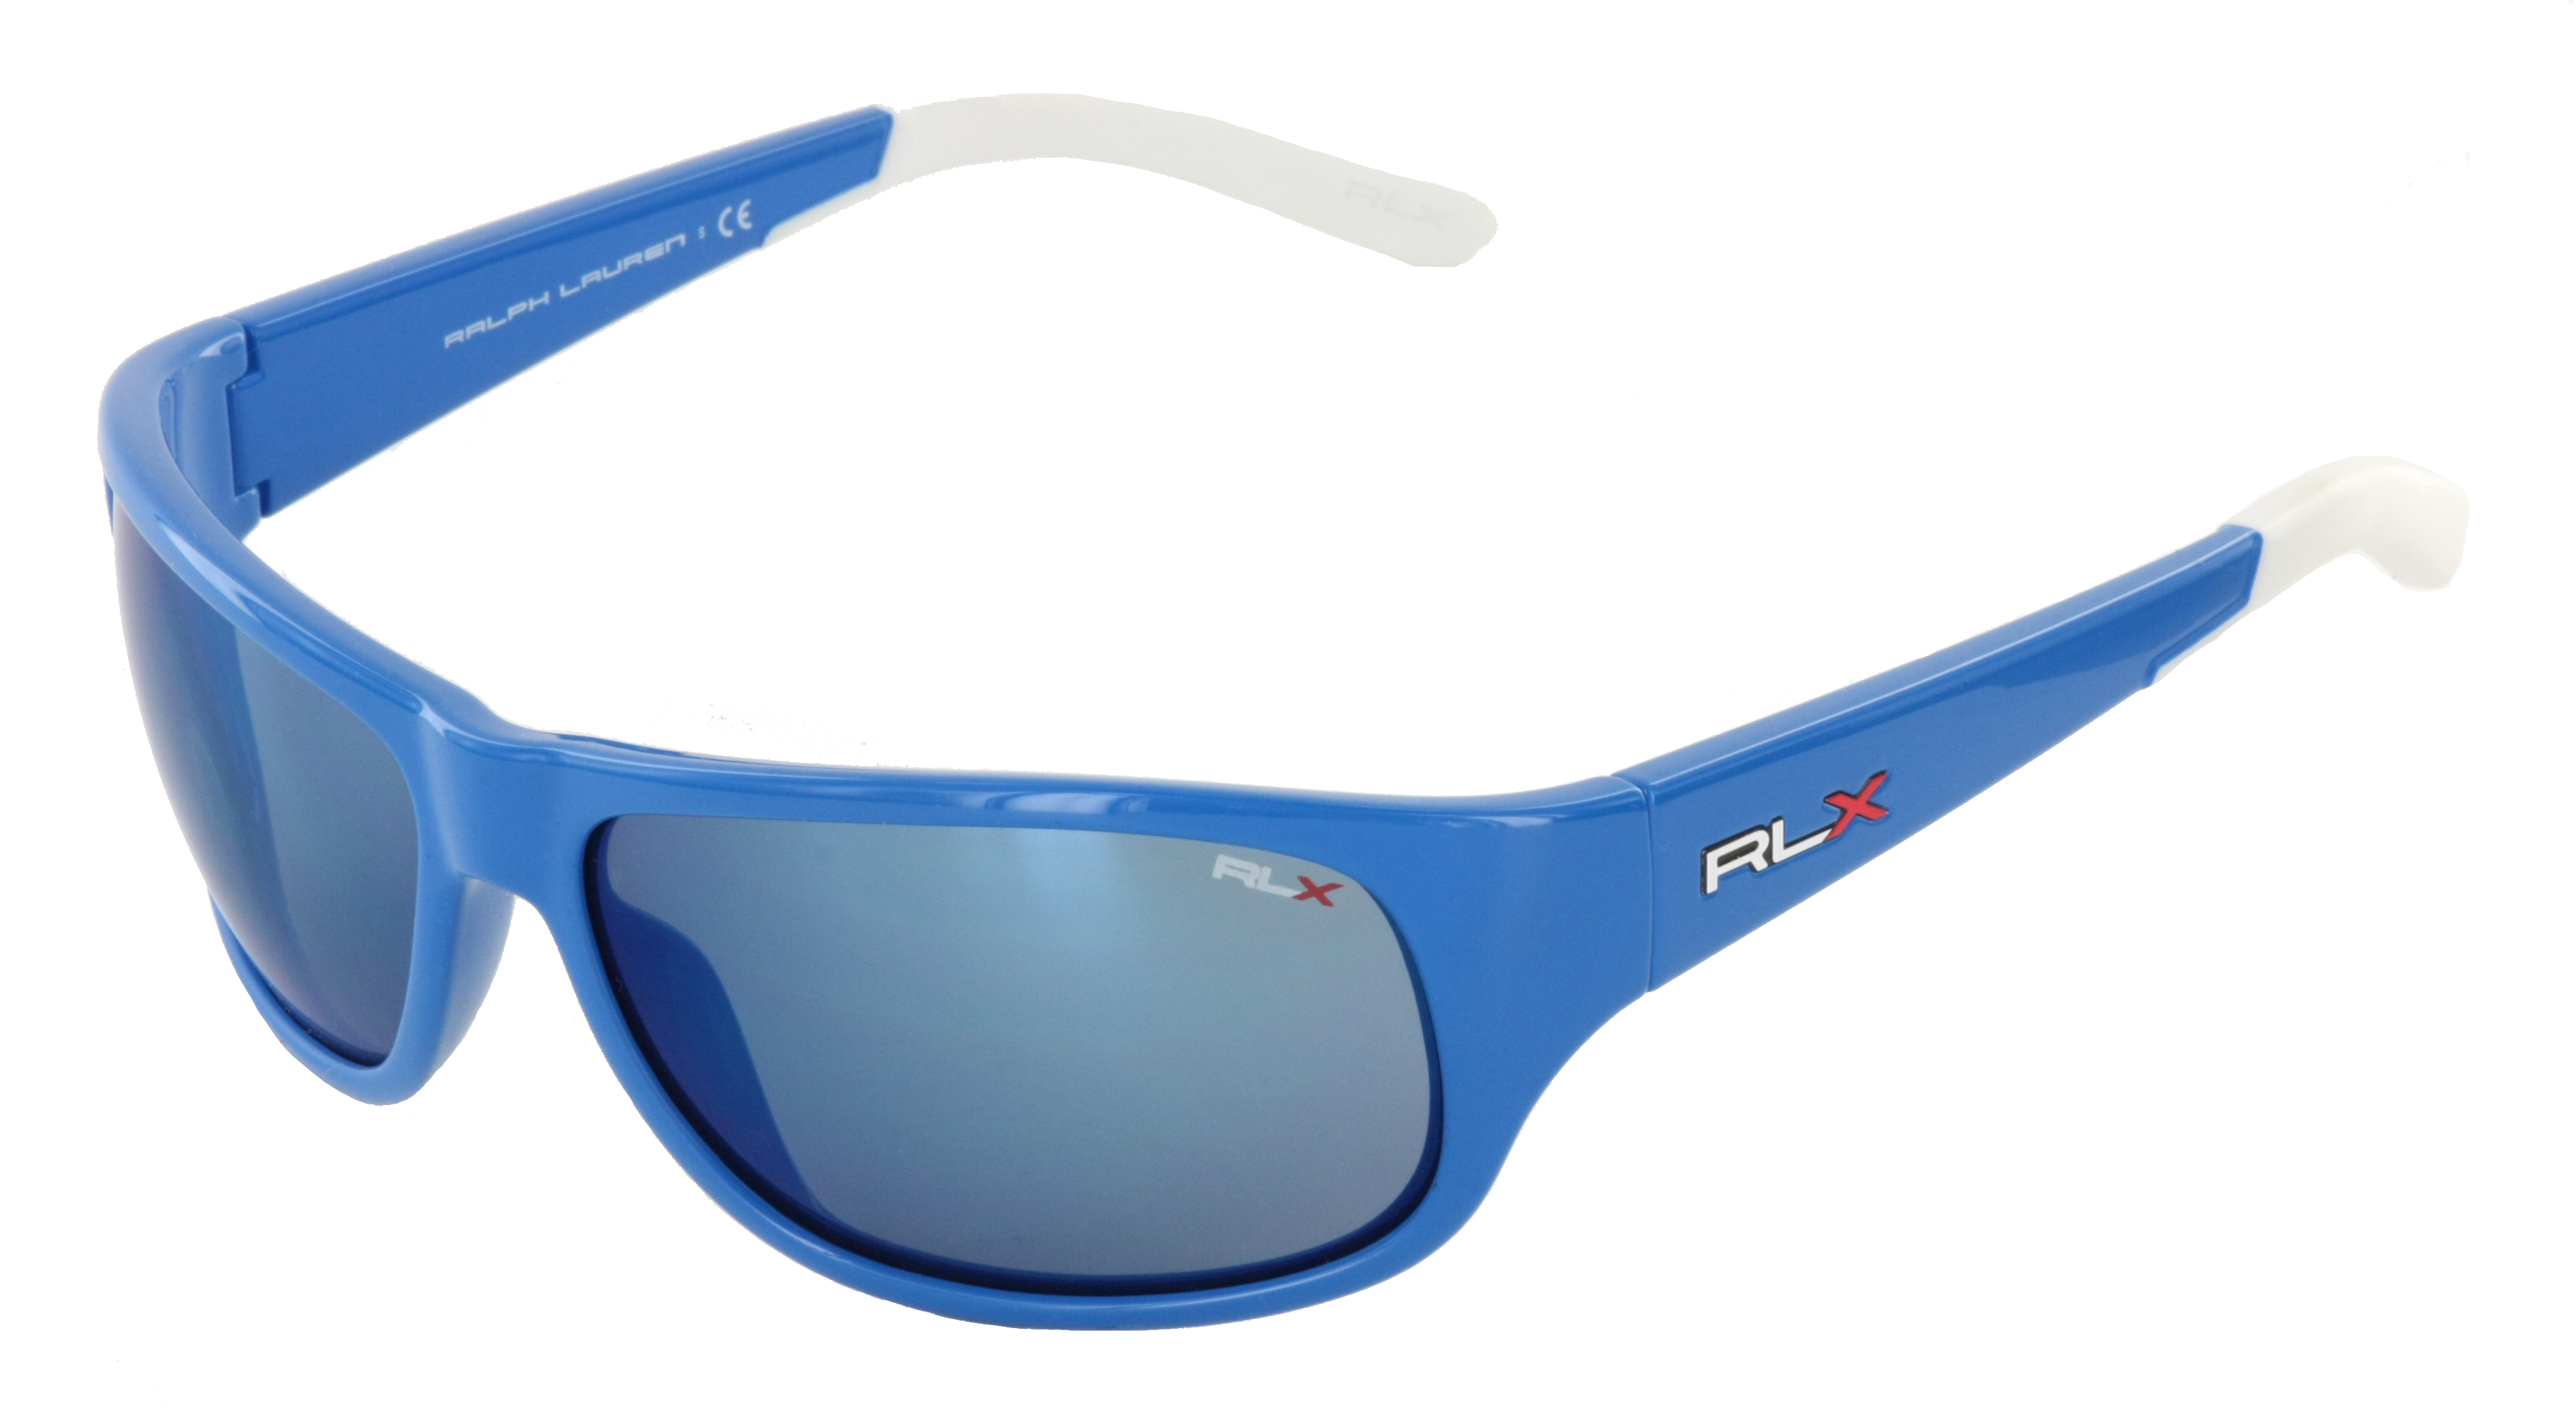 Polo Ralph Lauren RLX Sport Sonnenbrille blau weiß 53496J Size 64